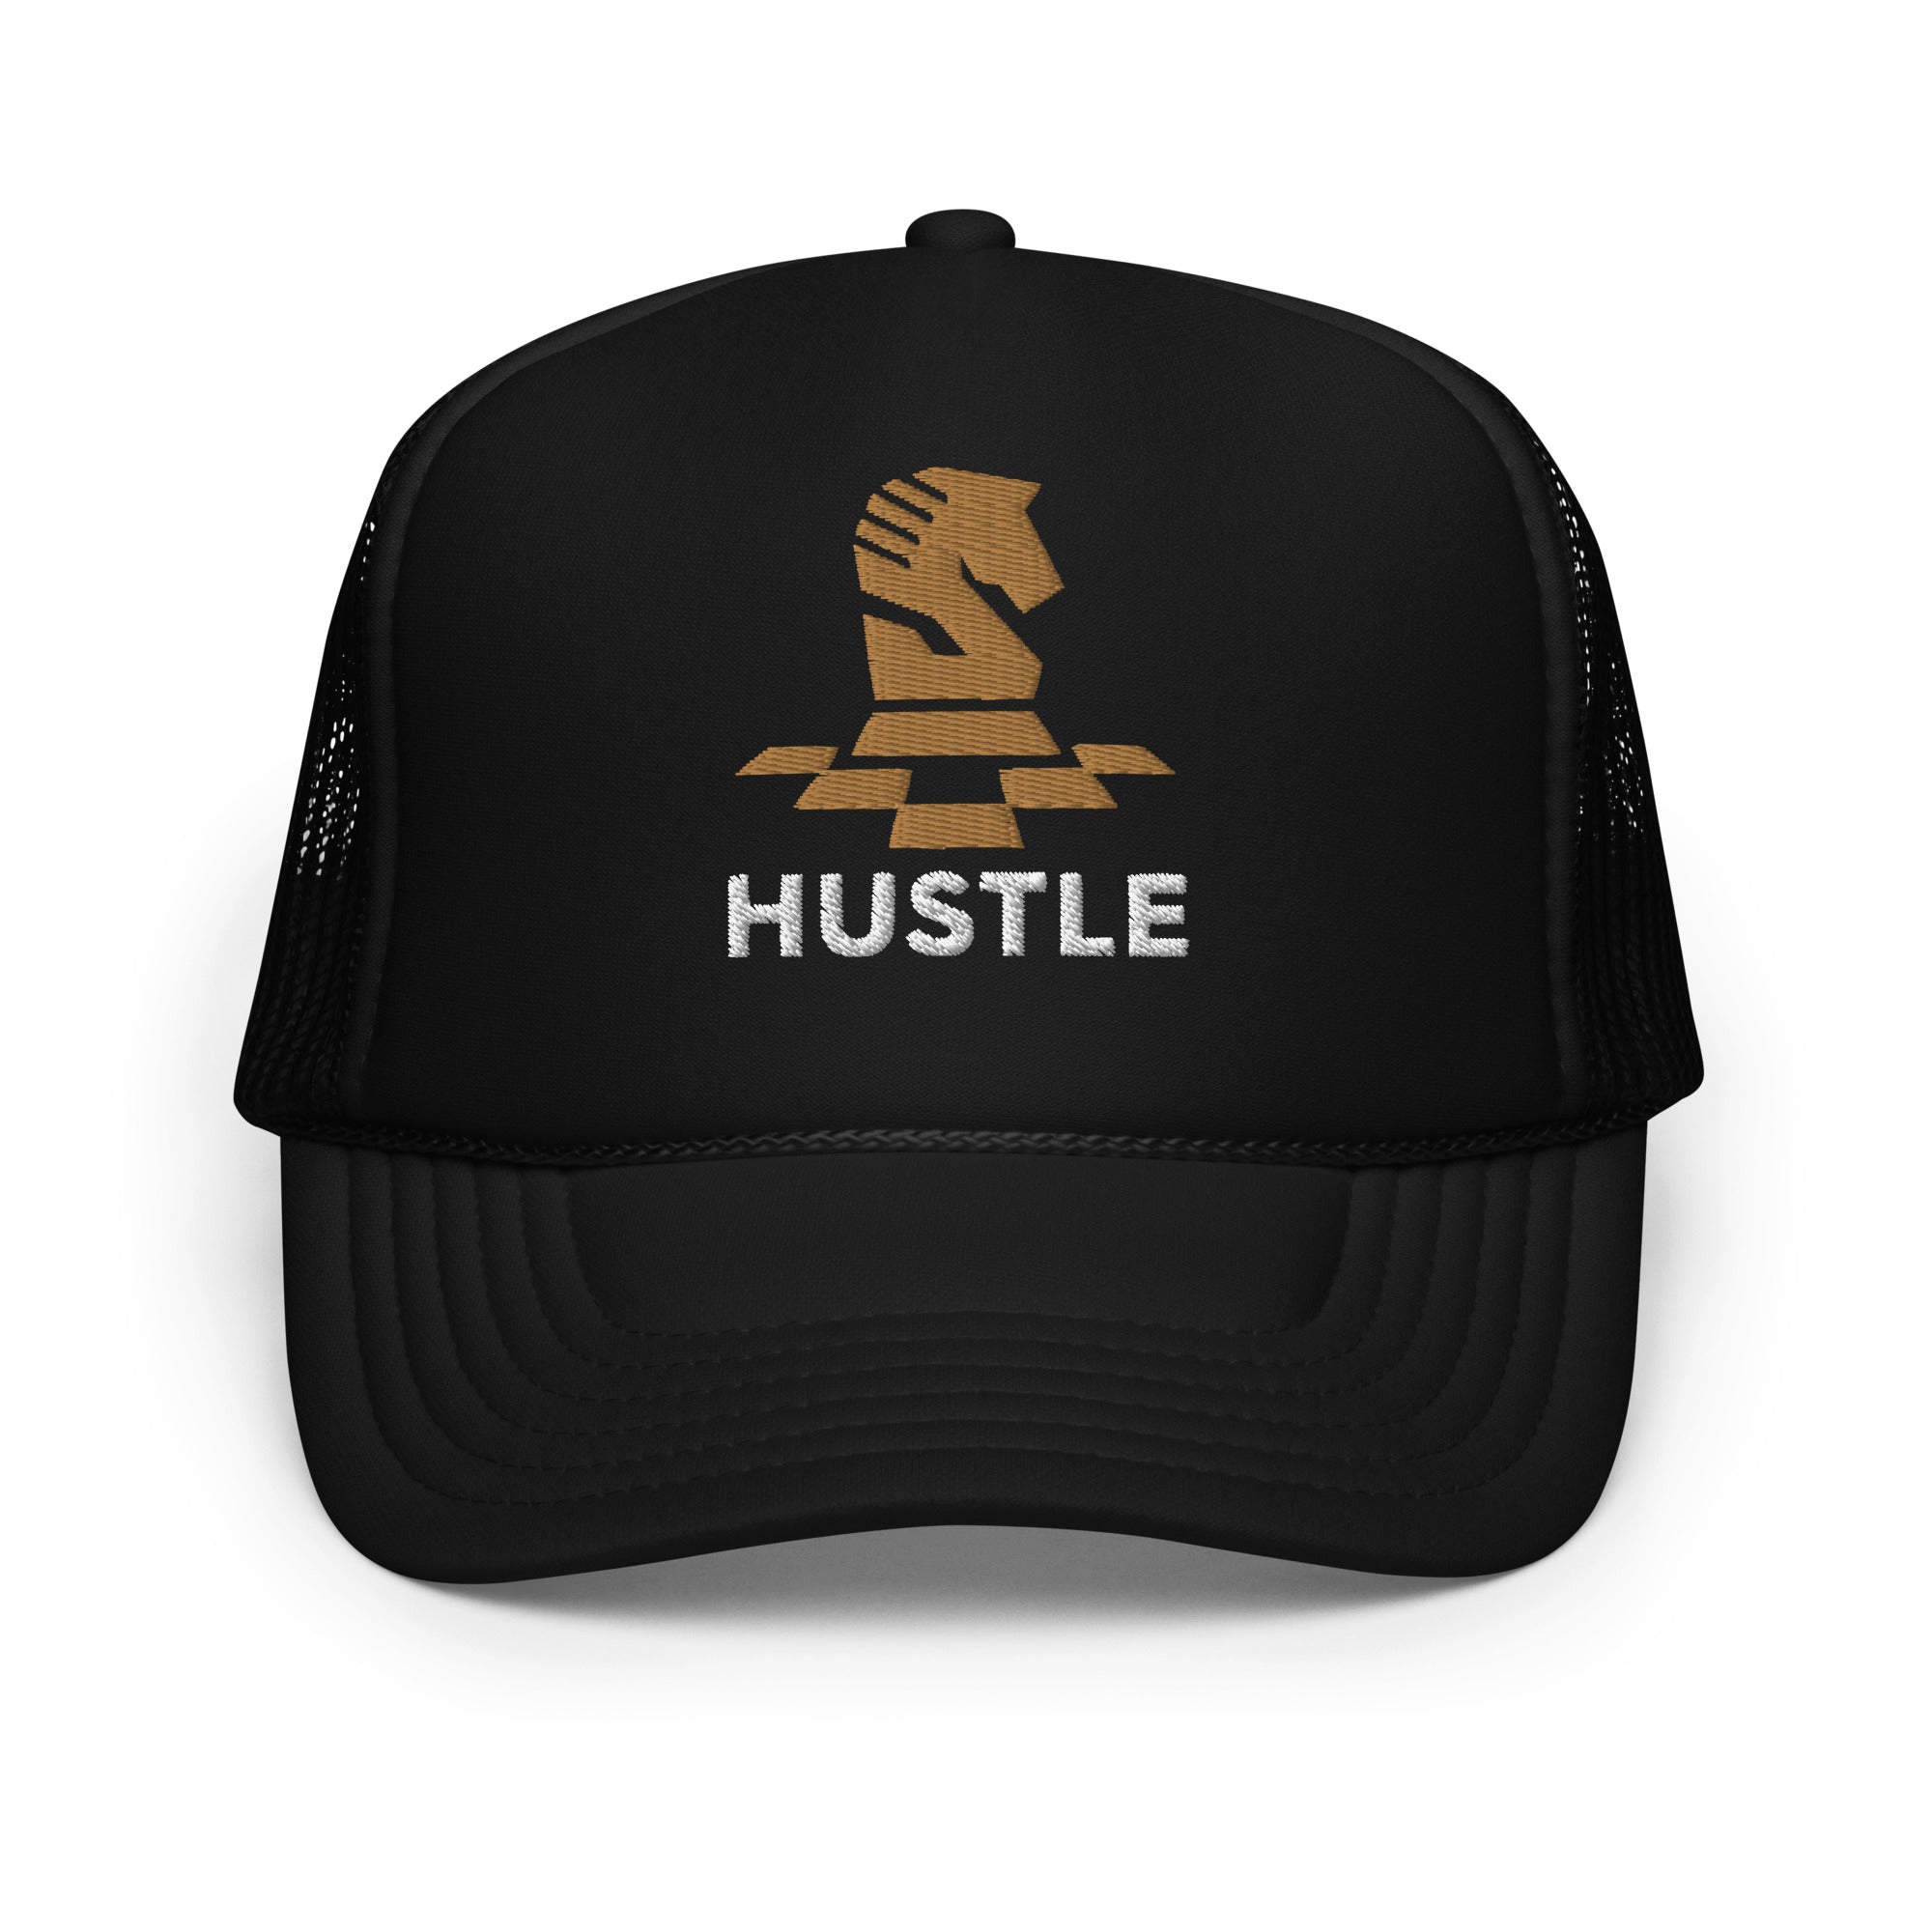 Hustle Foam trucker hat